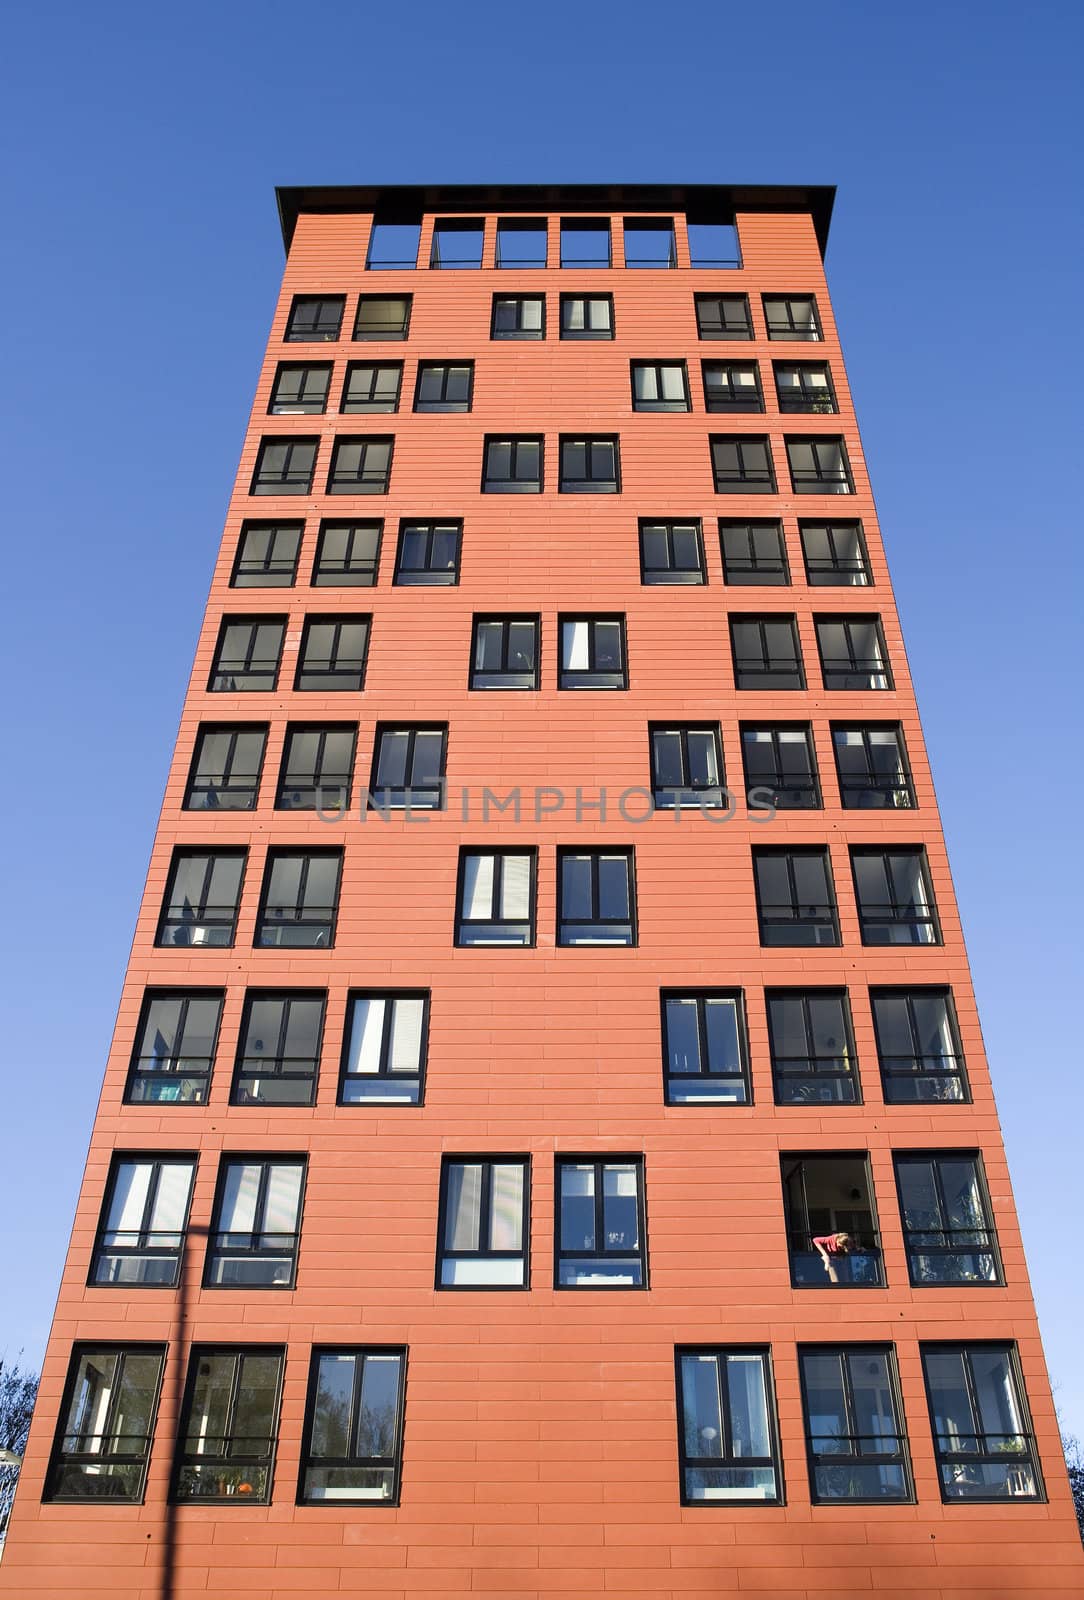 Orange Building Exterior towards Blue sky